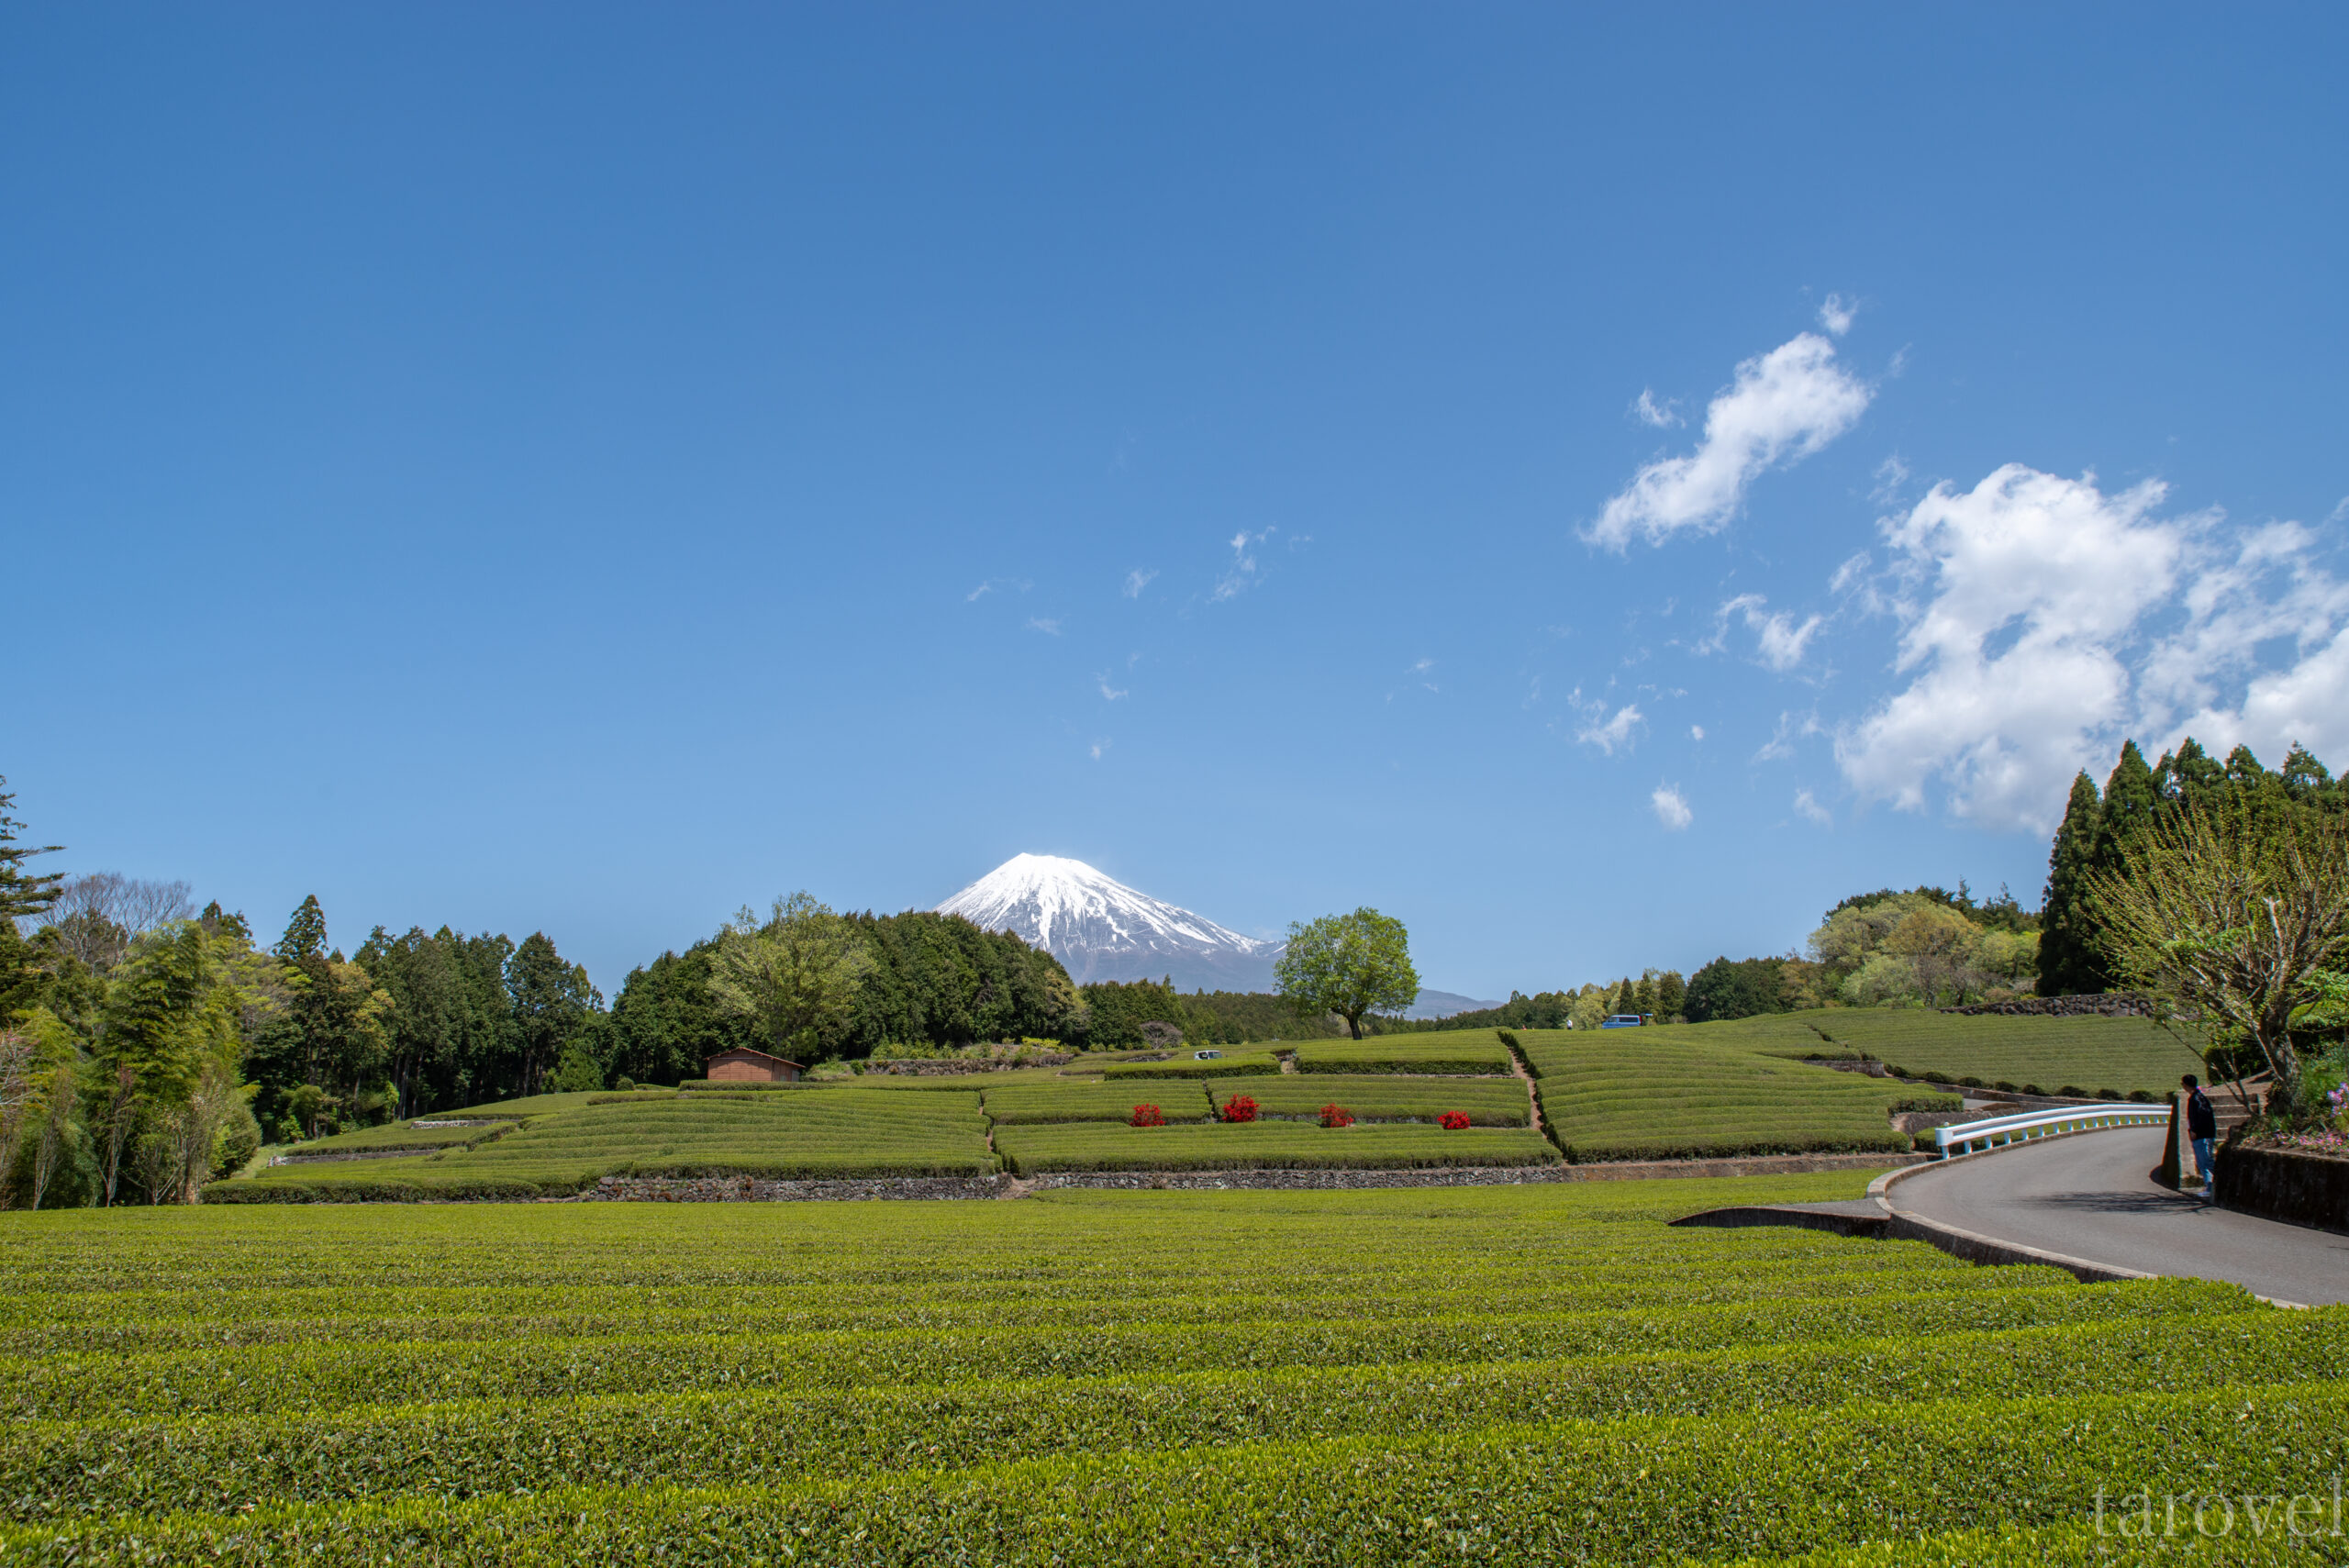 日本の茶畑と富士山の絶景が織りなす、心癒される楽園。静岡県の大淵笹場への行き方